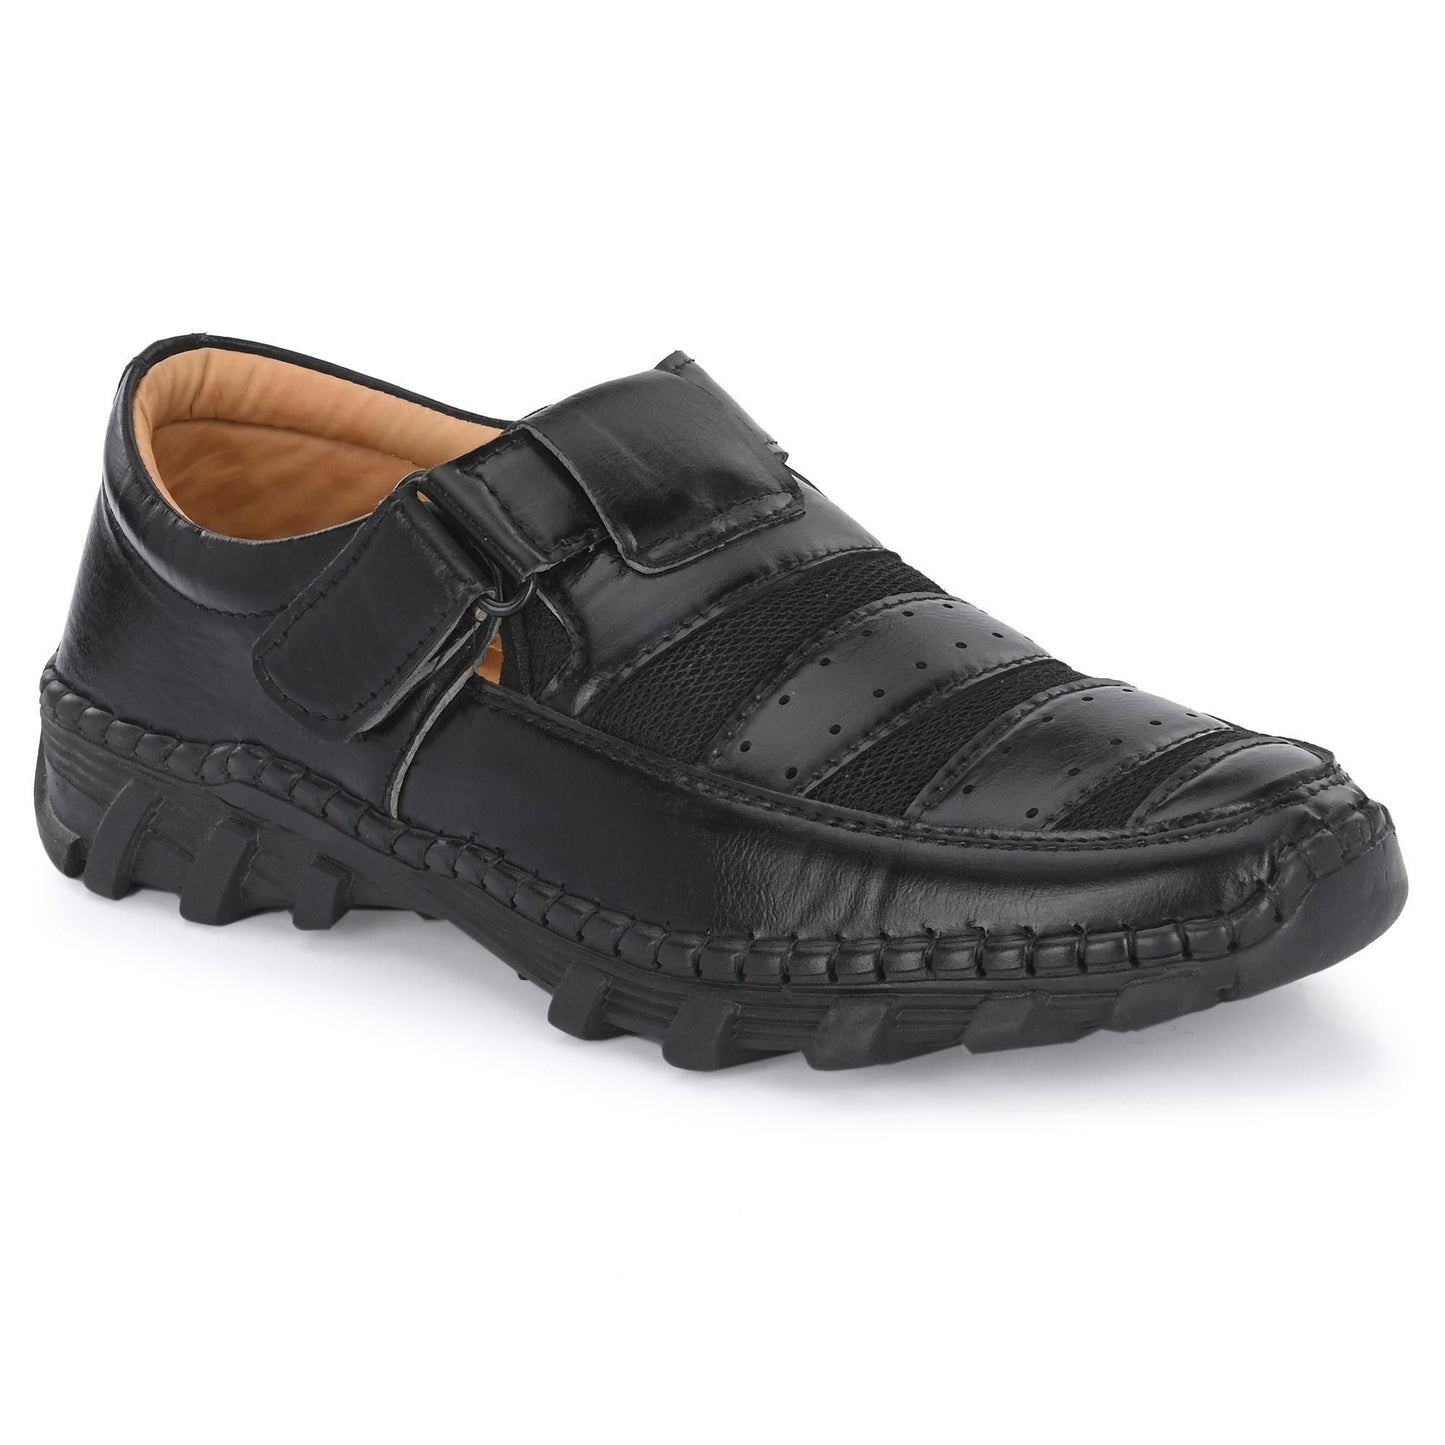 Men's Casual Roman Style Sandals Black